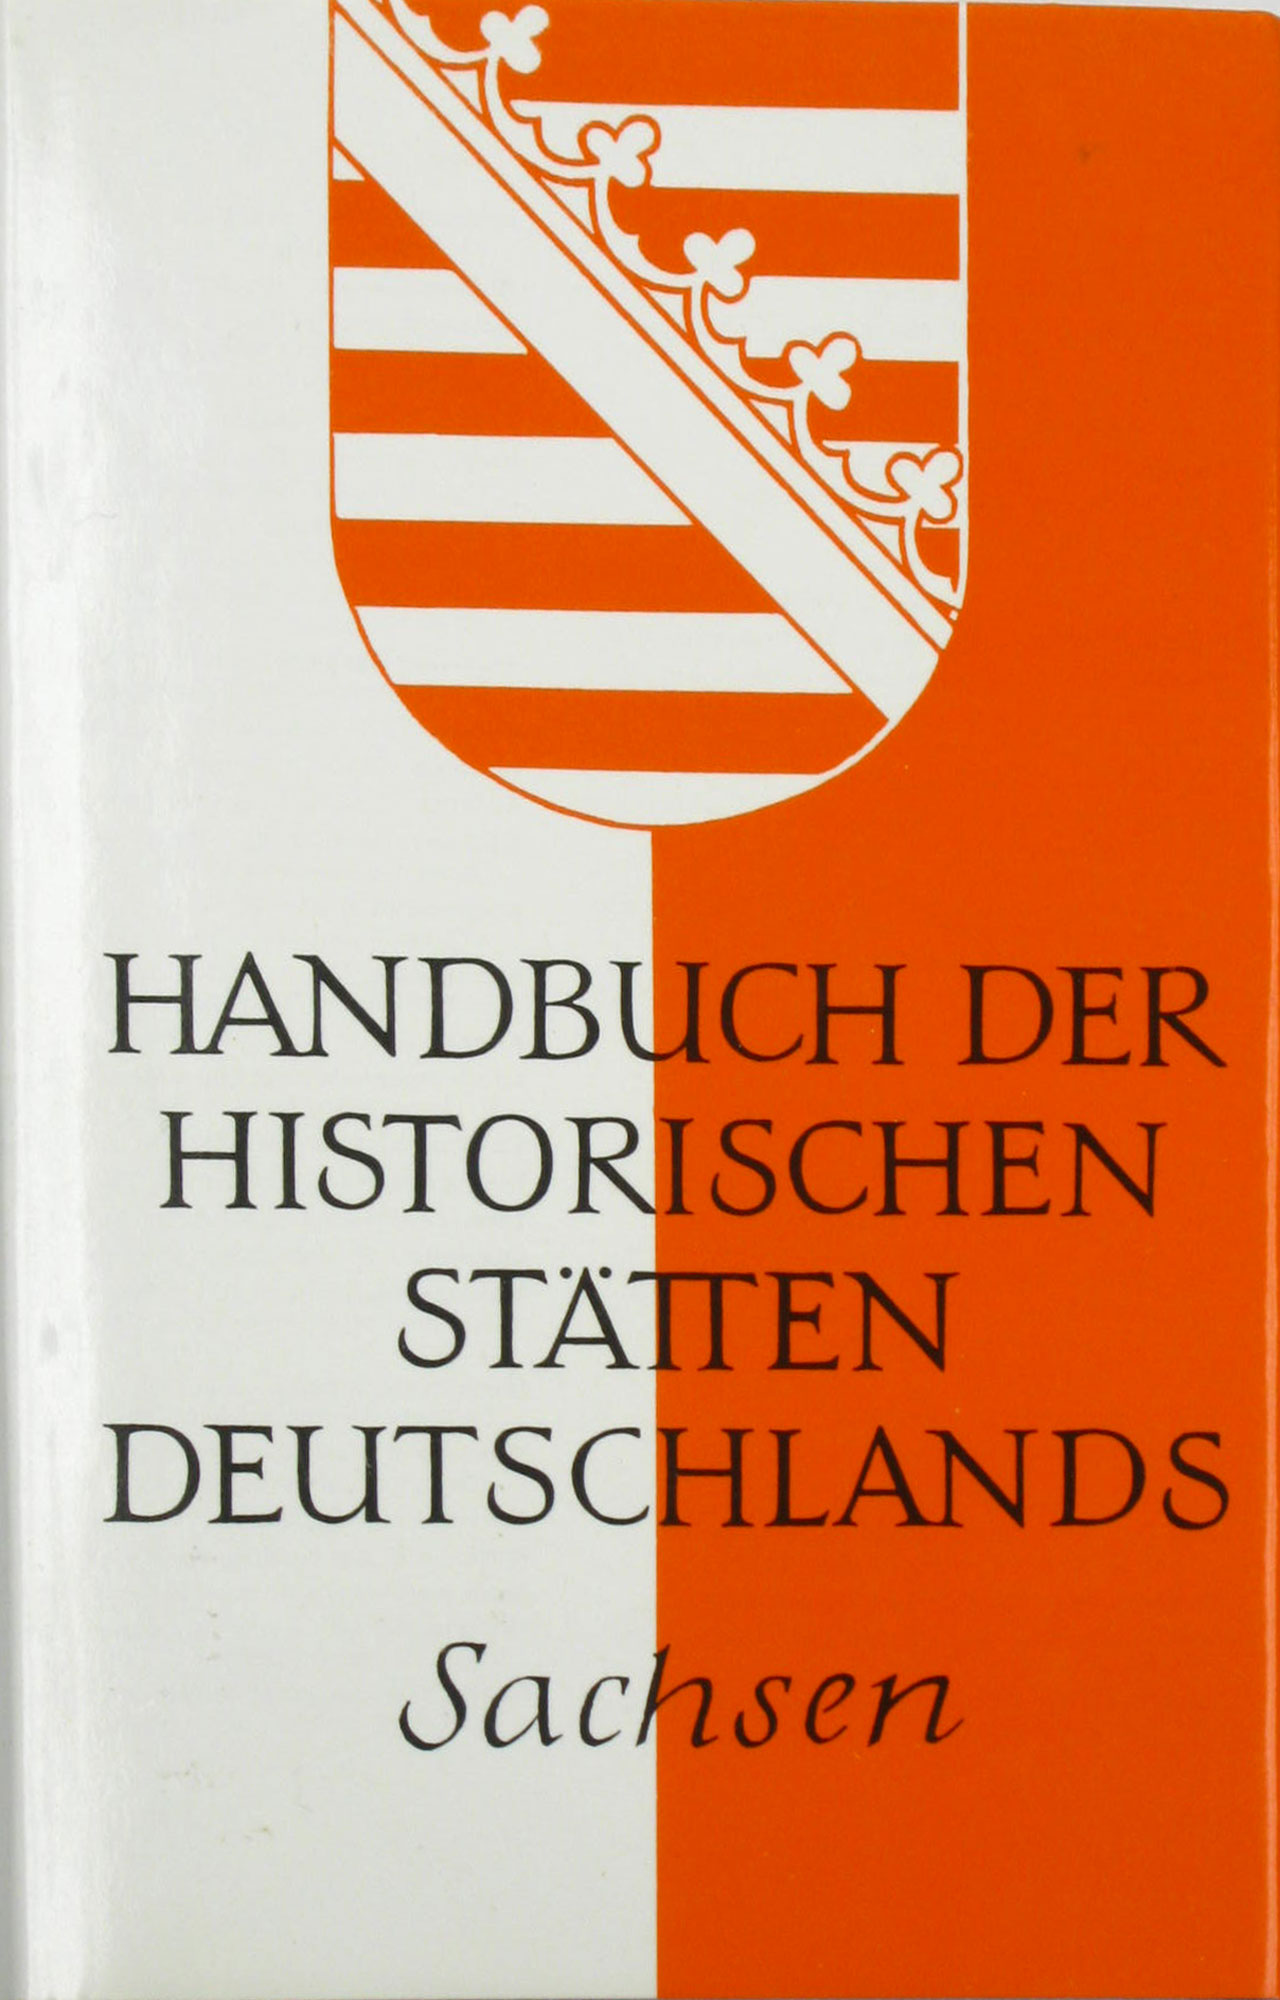 Schlesinger, Walter (Hrsg.):  Handbuch der historischen Stätten Deutschlands. Berlin und Brandenburg. Band 8. 